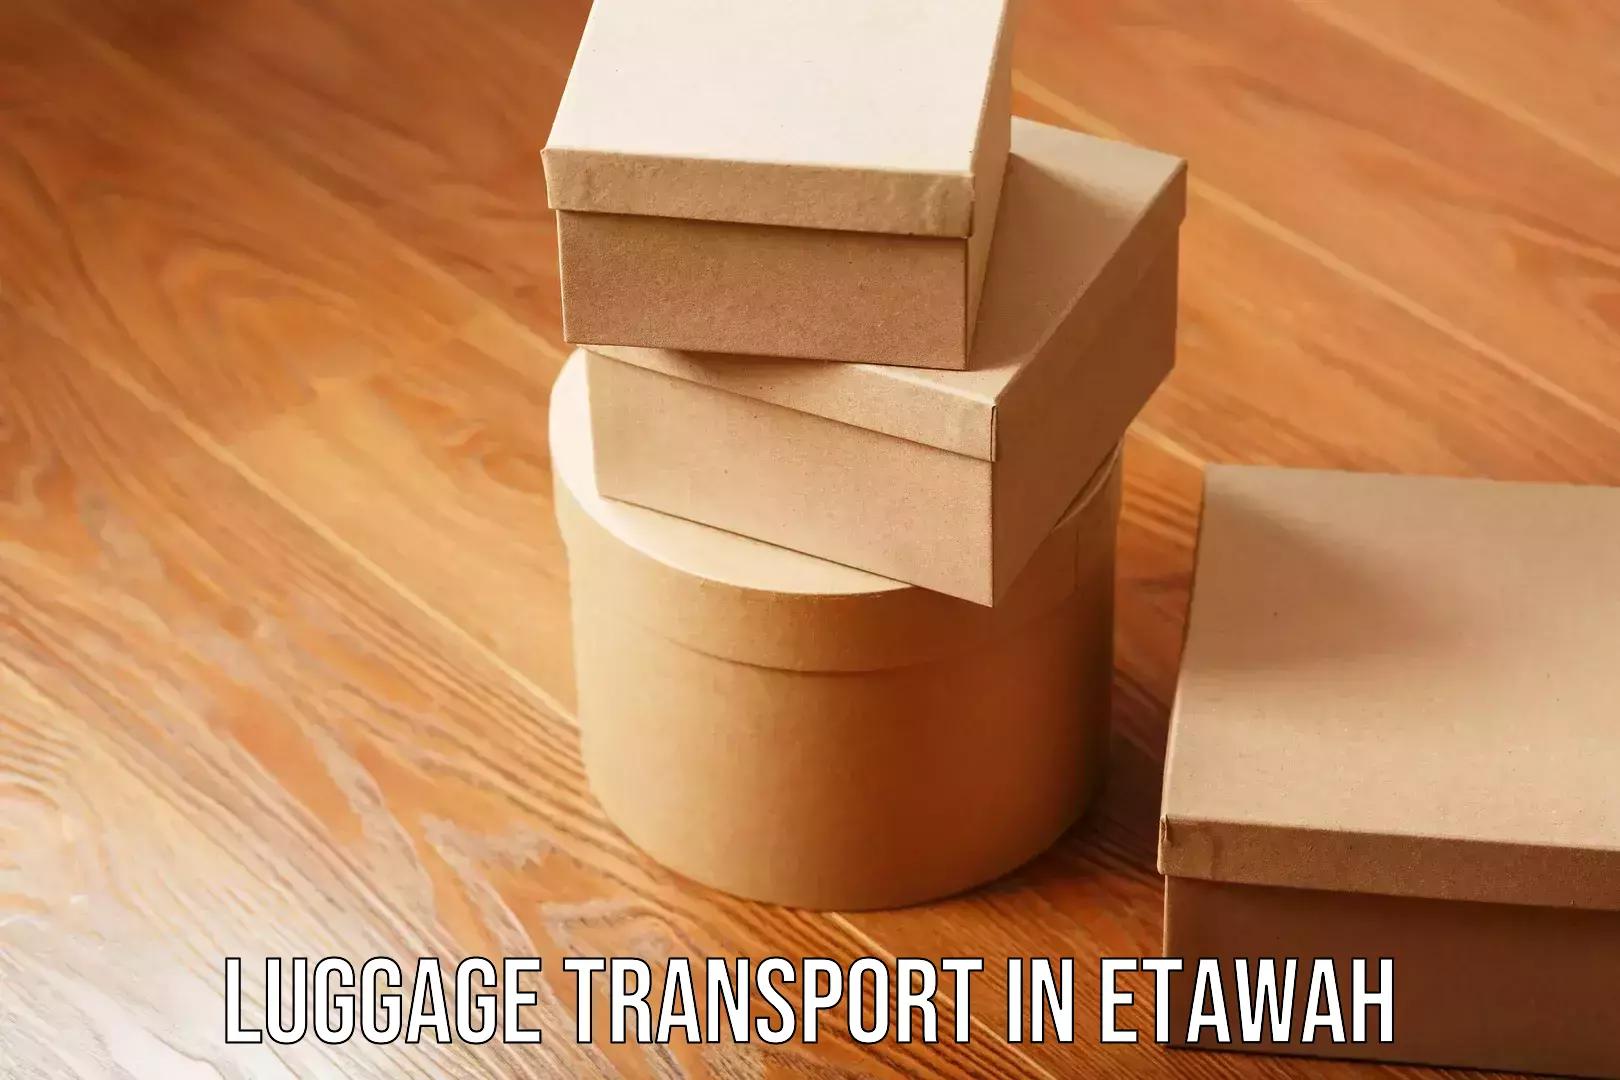 Luggage transport logistics in Etawah